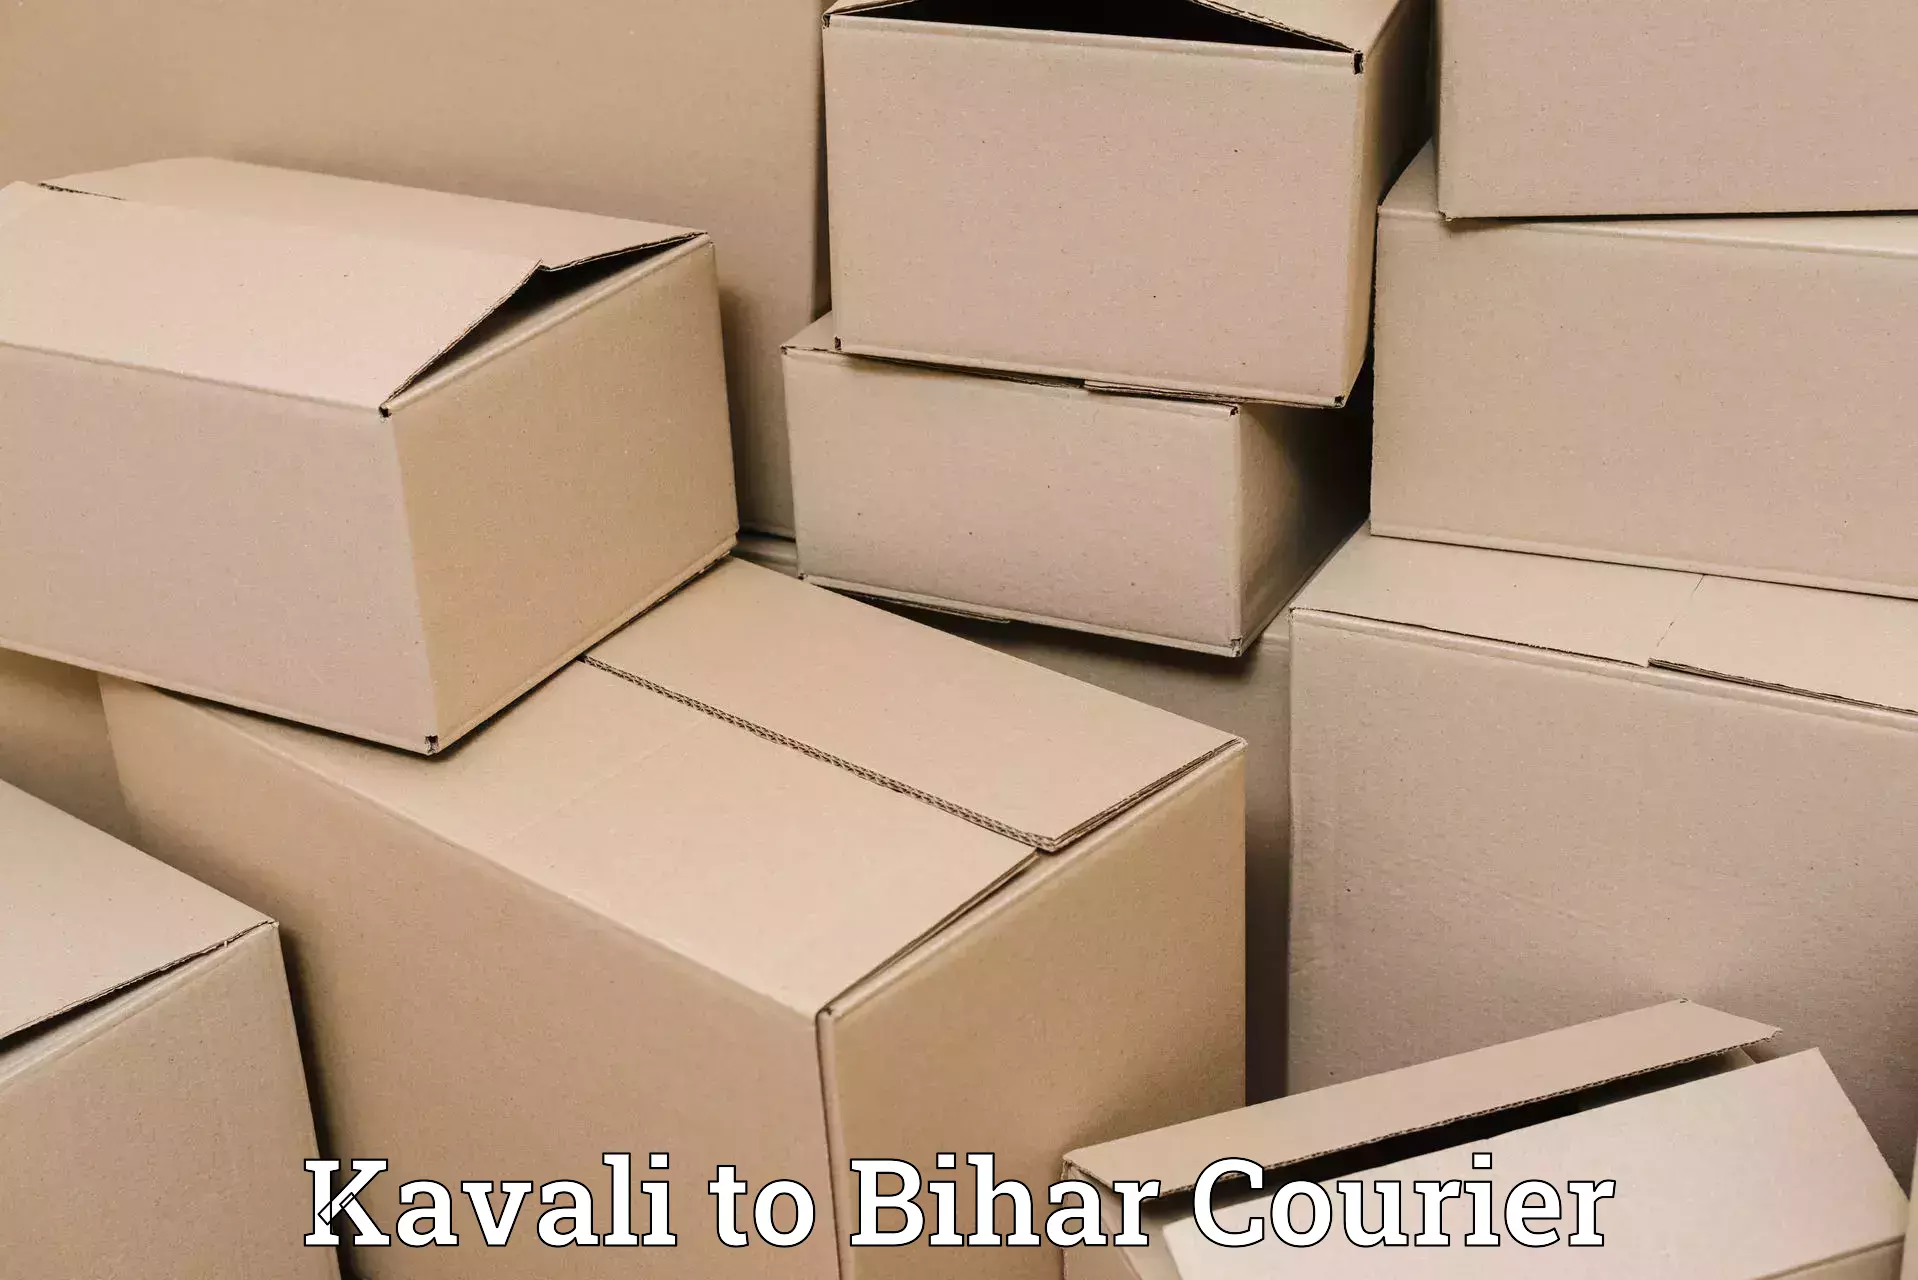 Reliable logistics providers Kavali to Runni Saidpur